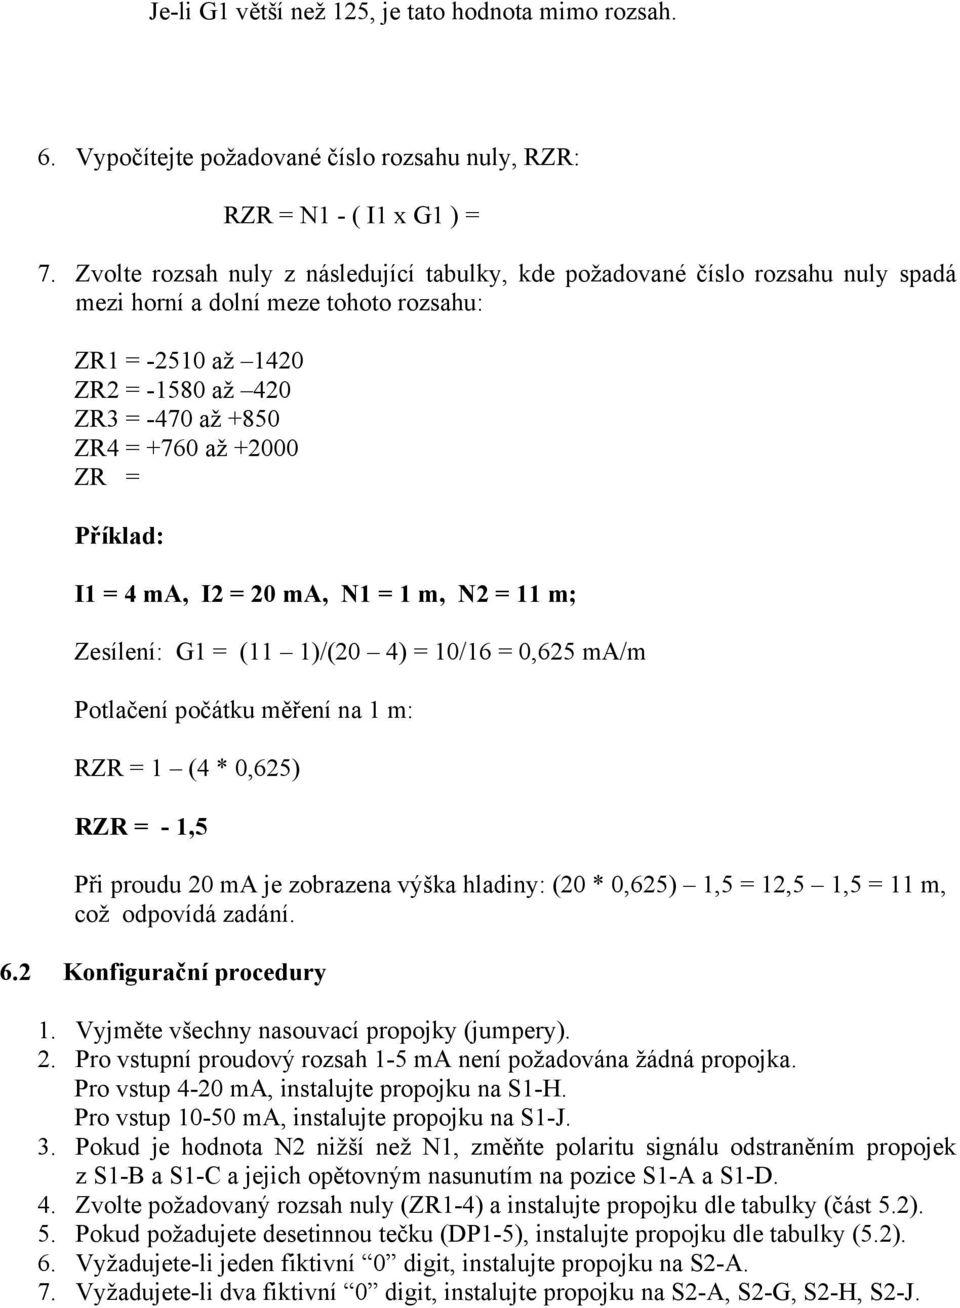 ZR = Příklad: I1 = 4 ma, I2 = 20 ma, N1 = 1 m, N2 = 11 m; Zesílení: G1 = (11 1)/(20 4) = 10/16 = 0,625 ma/m Potlačení počátku měření na 1 m: RZR = 1 (4 * 0,625) RZR = - 1,5 Při proudu 20 ma je